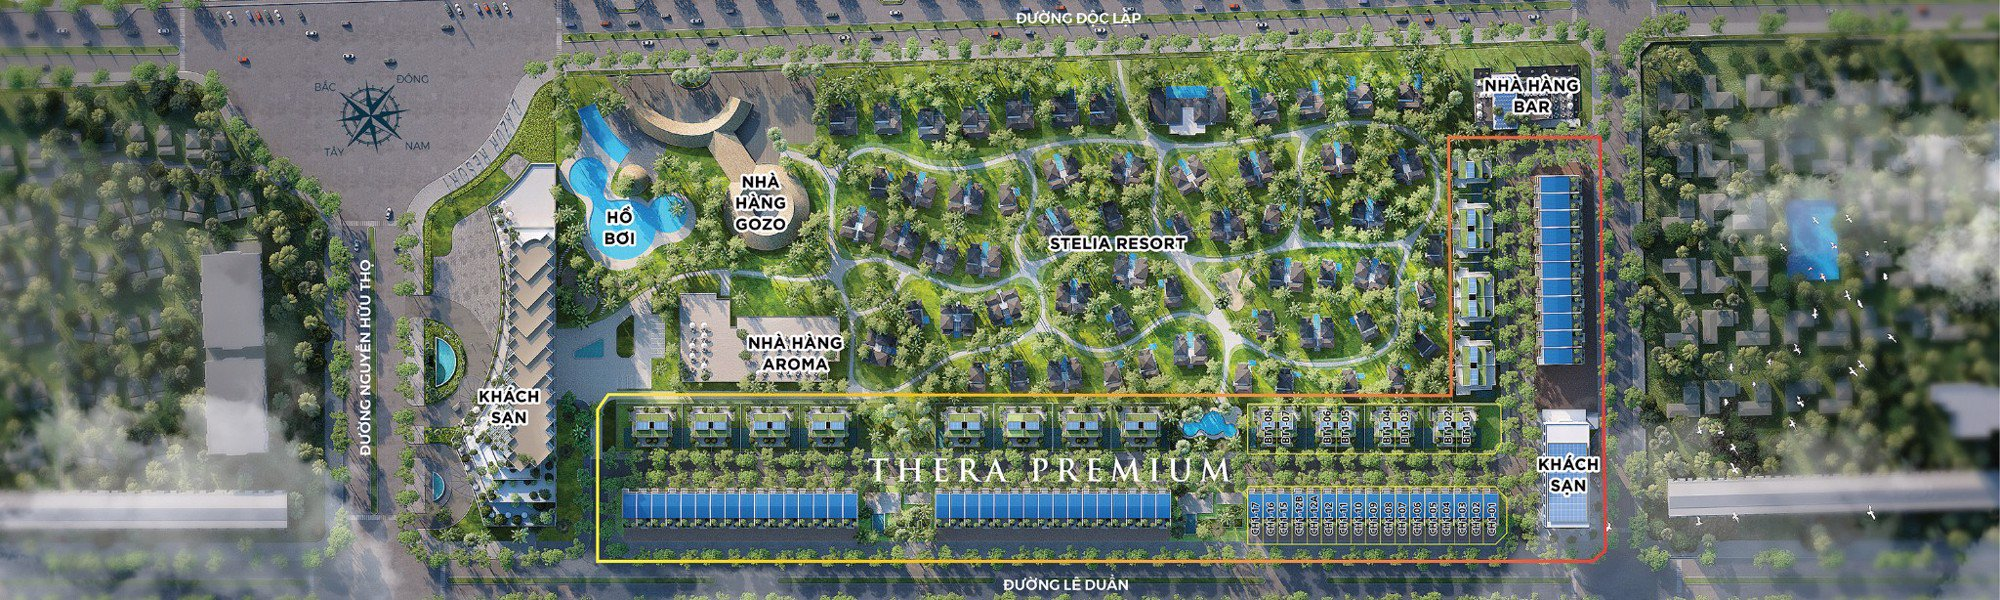 Mặt bằng phân khu dự án Thera Premium thuộc tổng thể dự án Việt Beach Resort